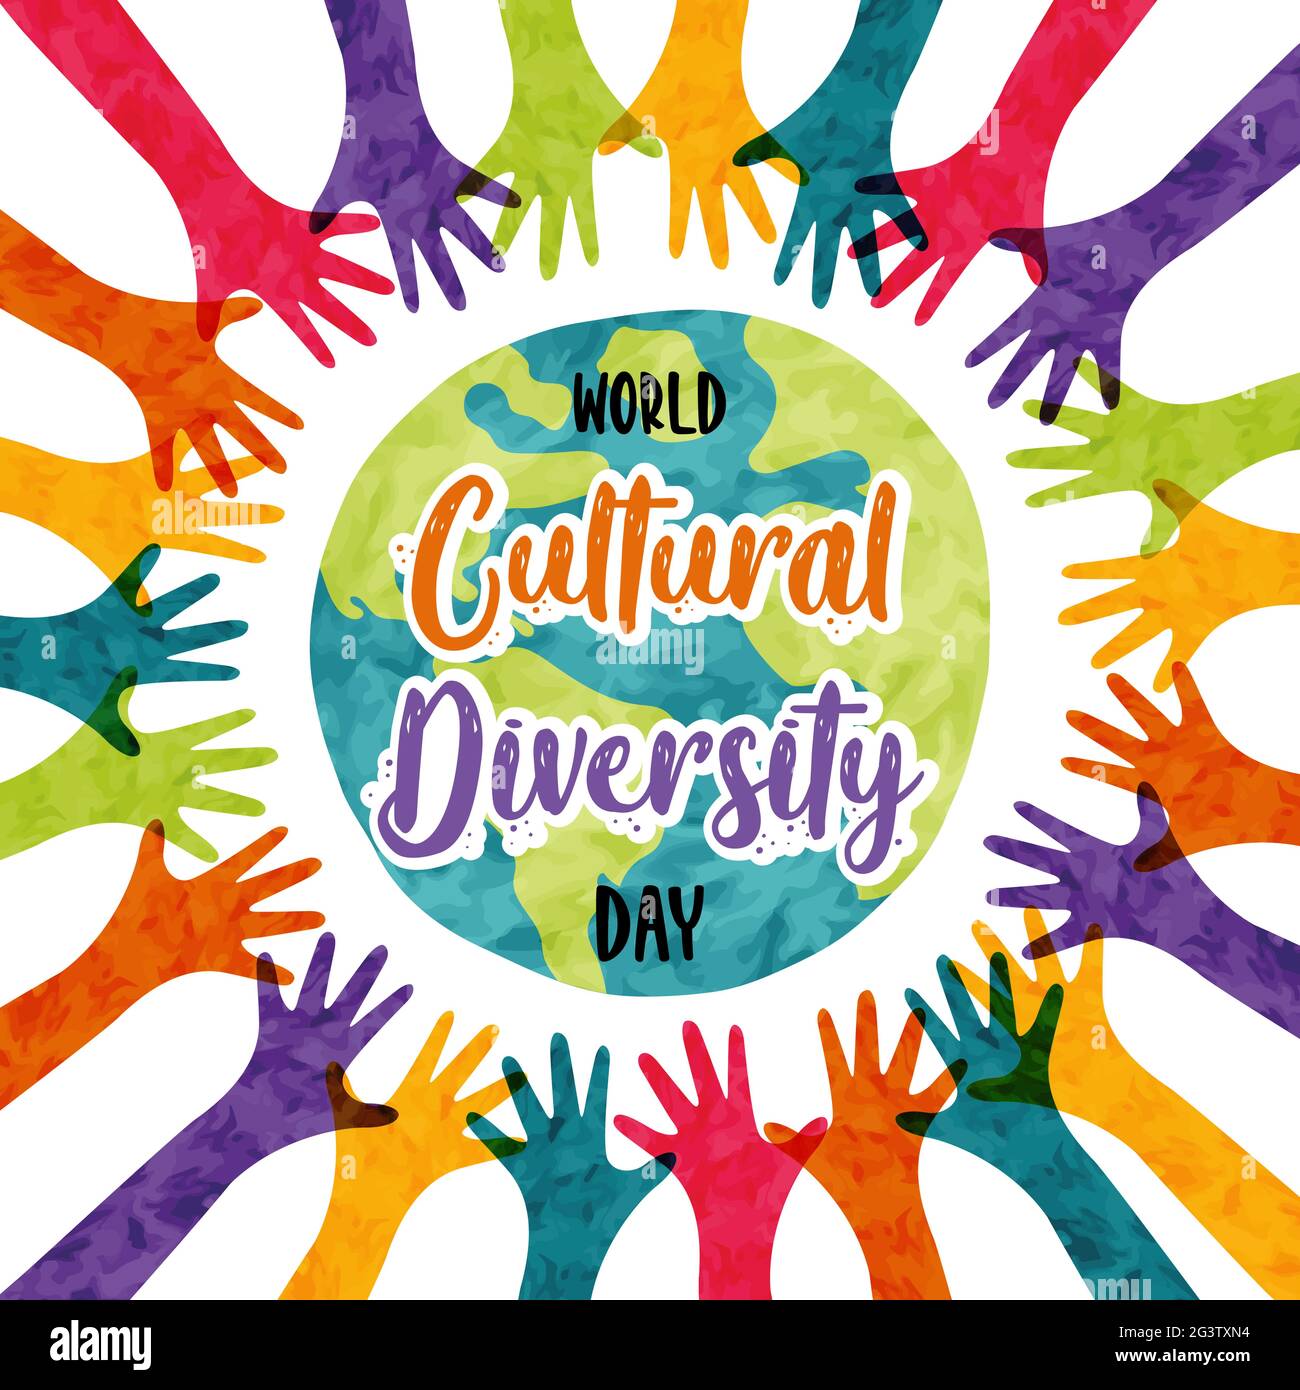 Carte de vœux de la Journée mondiale de la diversité culturelle illustration des mains de personnes colorées soulevées ensemble. Concept d'aide sociale à la culture internationale. 21 mai Illustration de Vecteur